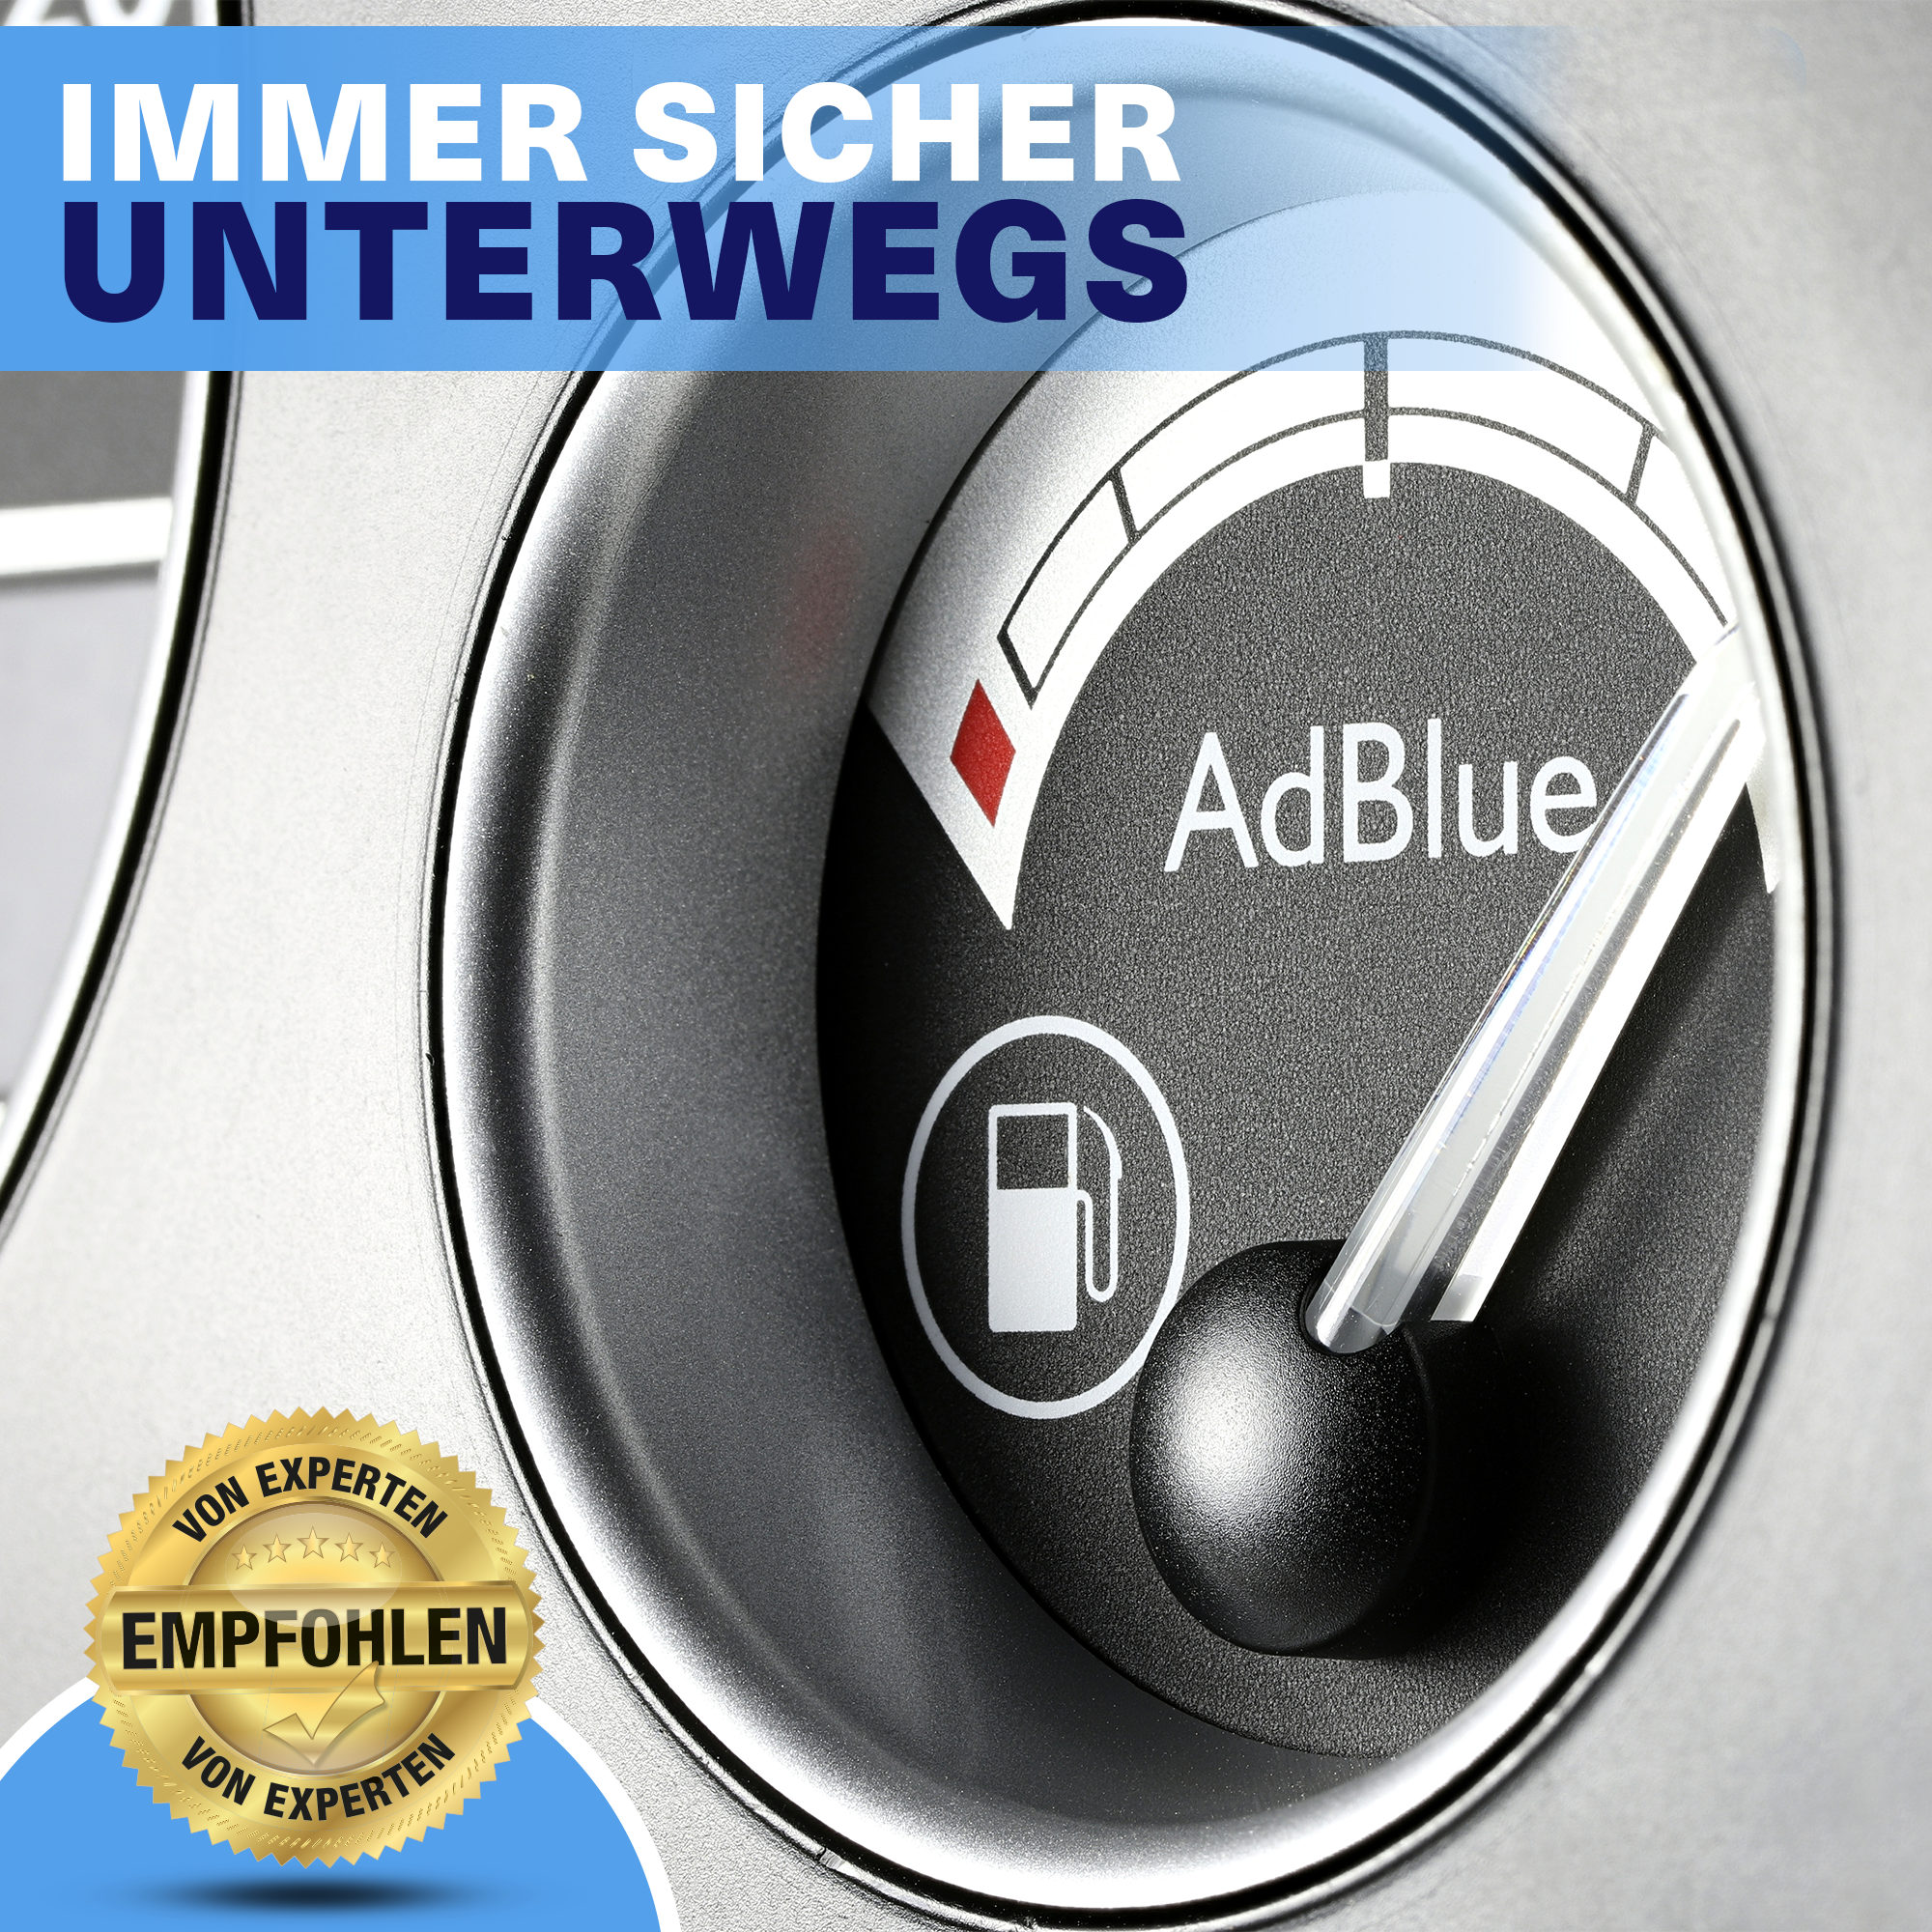 Hoyer AdBlue® 10 Liter Kanister Mikrofaserntuch & Latexhandschuhe